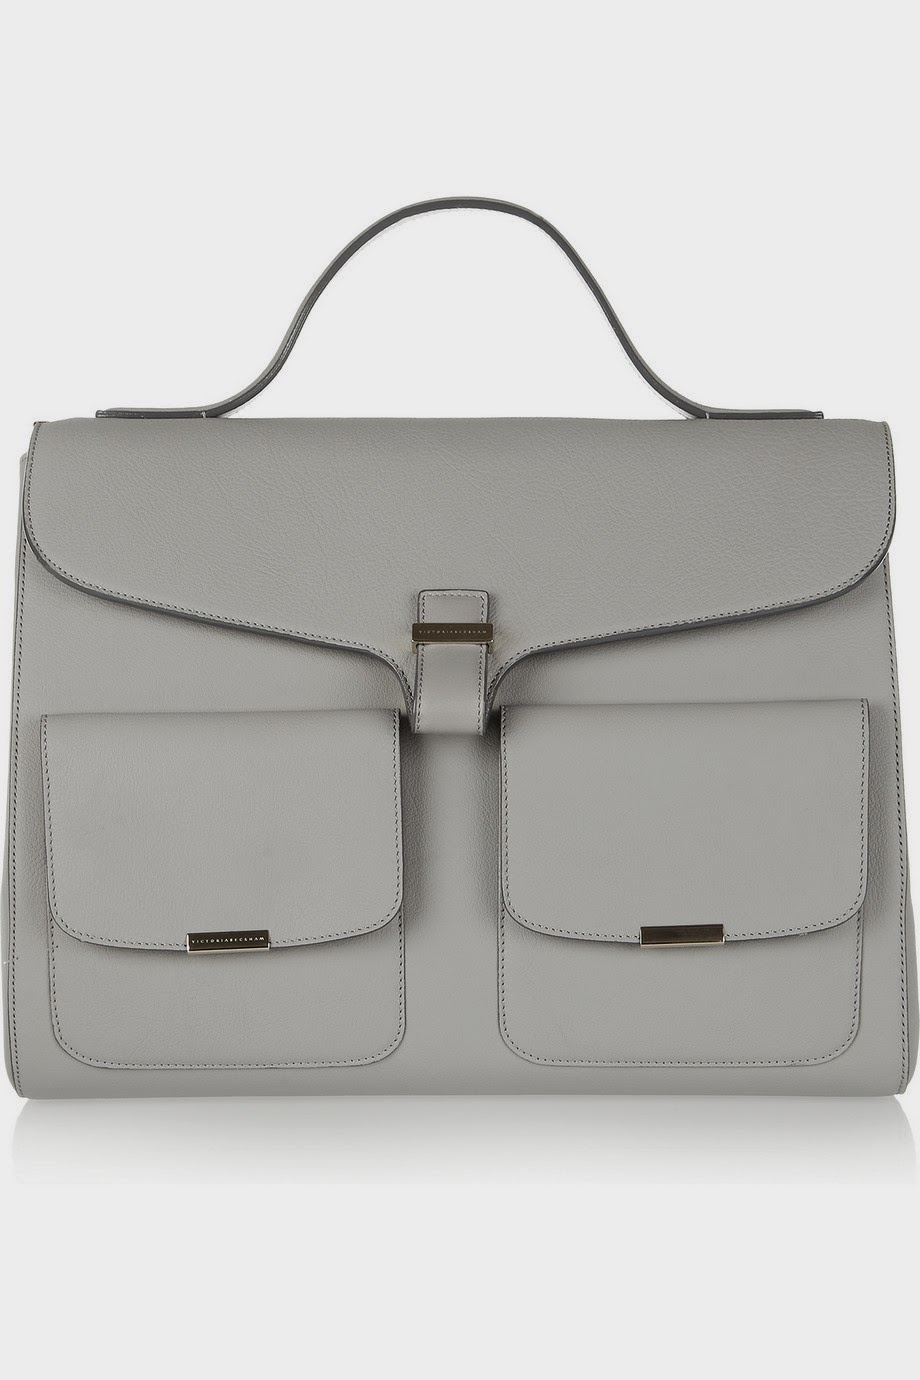 Handbag-A-Holic: Victoria Beckham Handbags